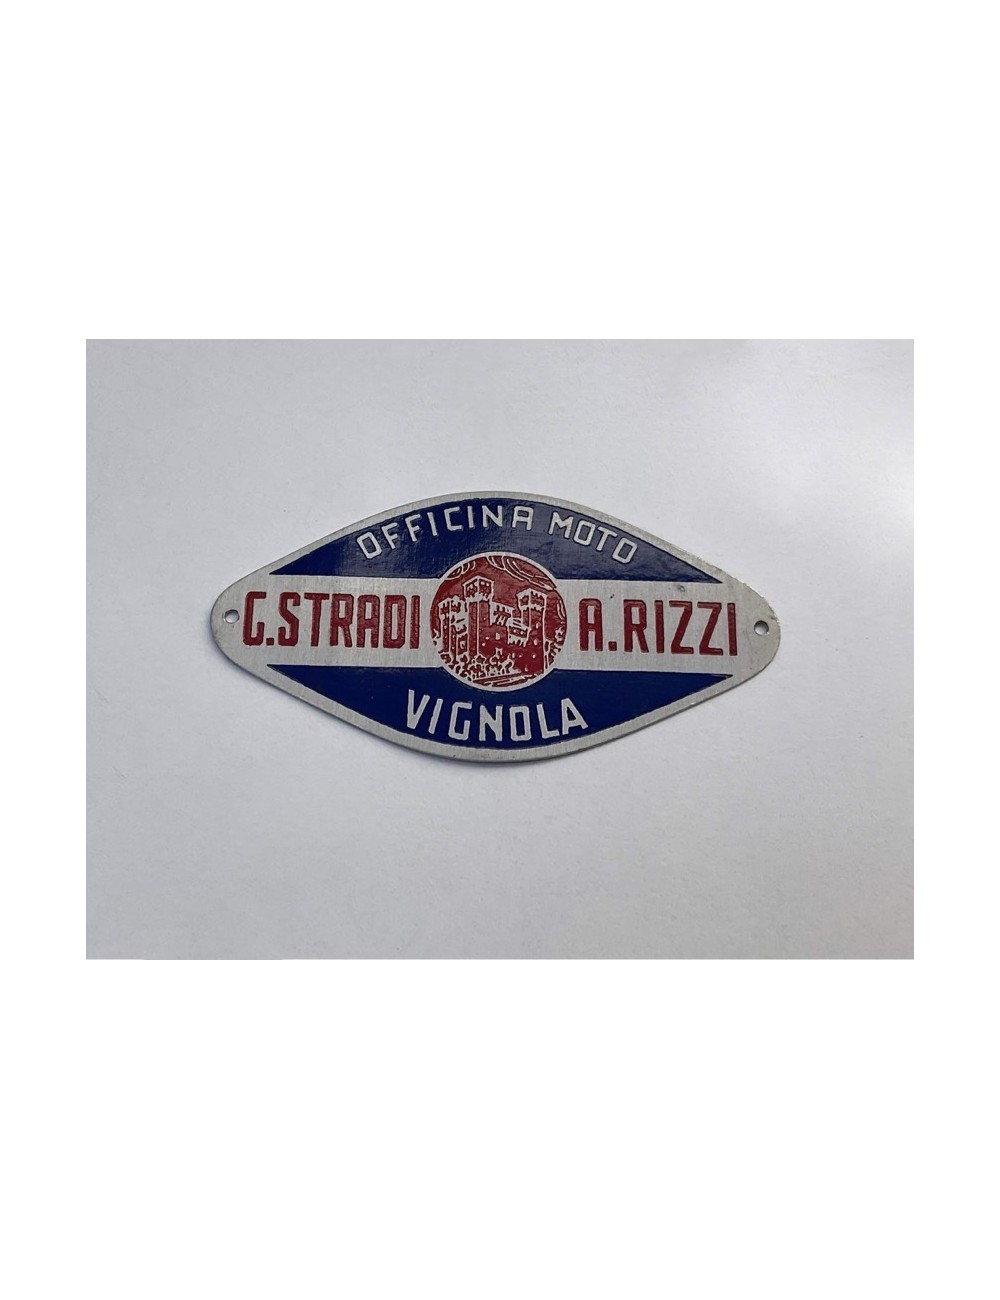 Targhetta concessionario G.Stradi - A.Rizzi. Dimensioni: 6,5 cm x 3 cm